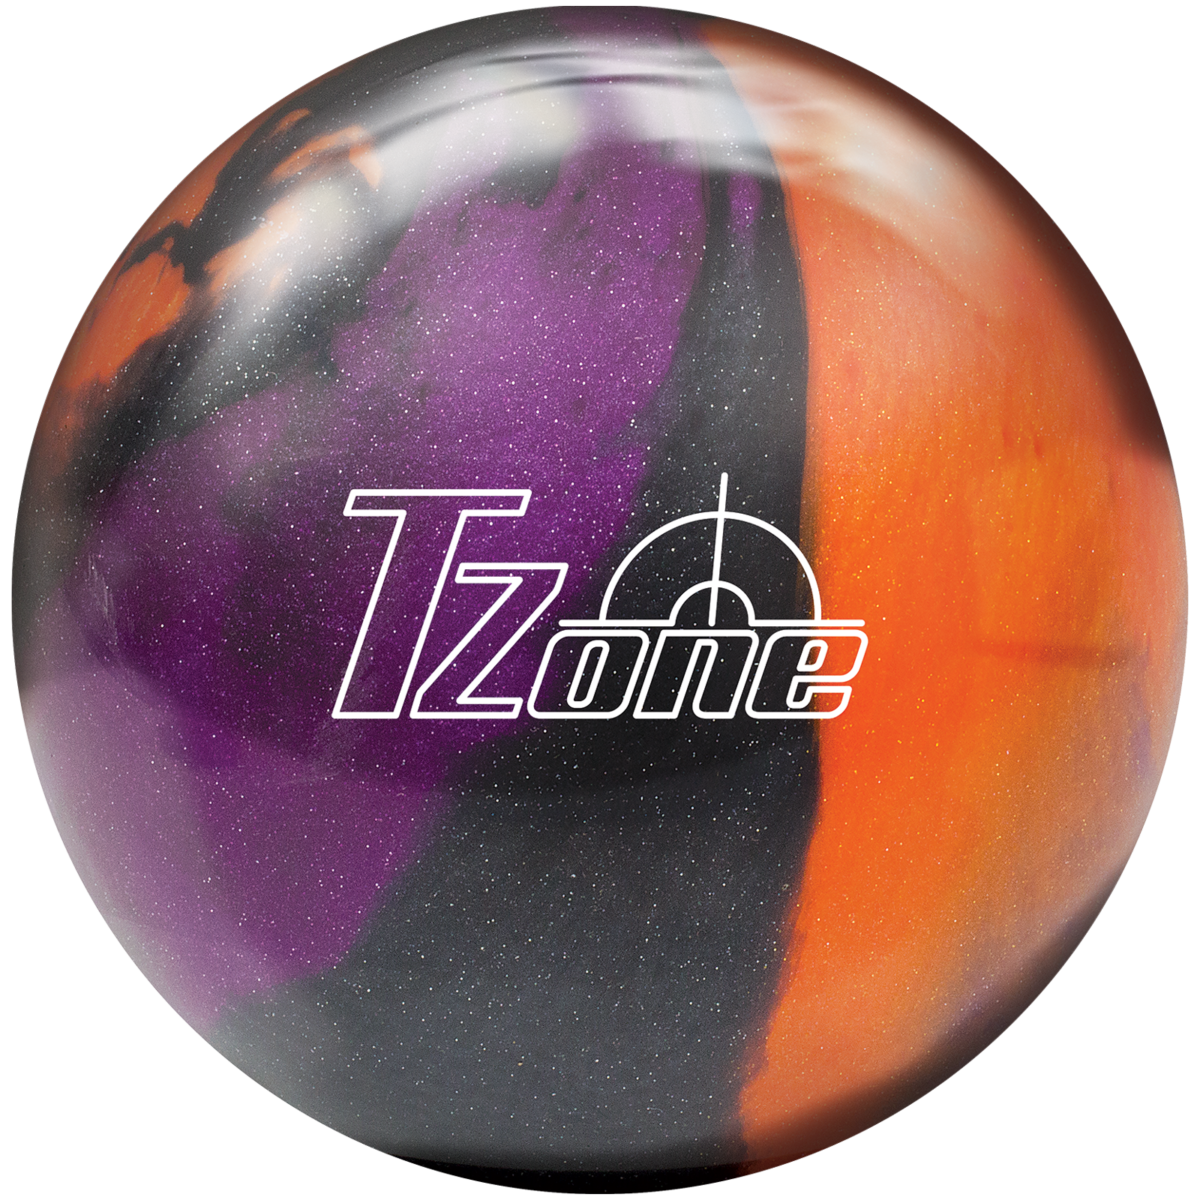 Brunswick T-Zone Glow Bowling Ball 14 lb Gold Envy